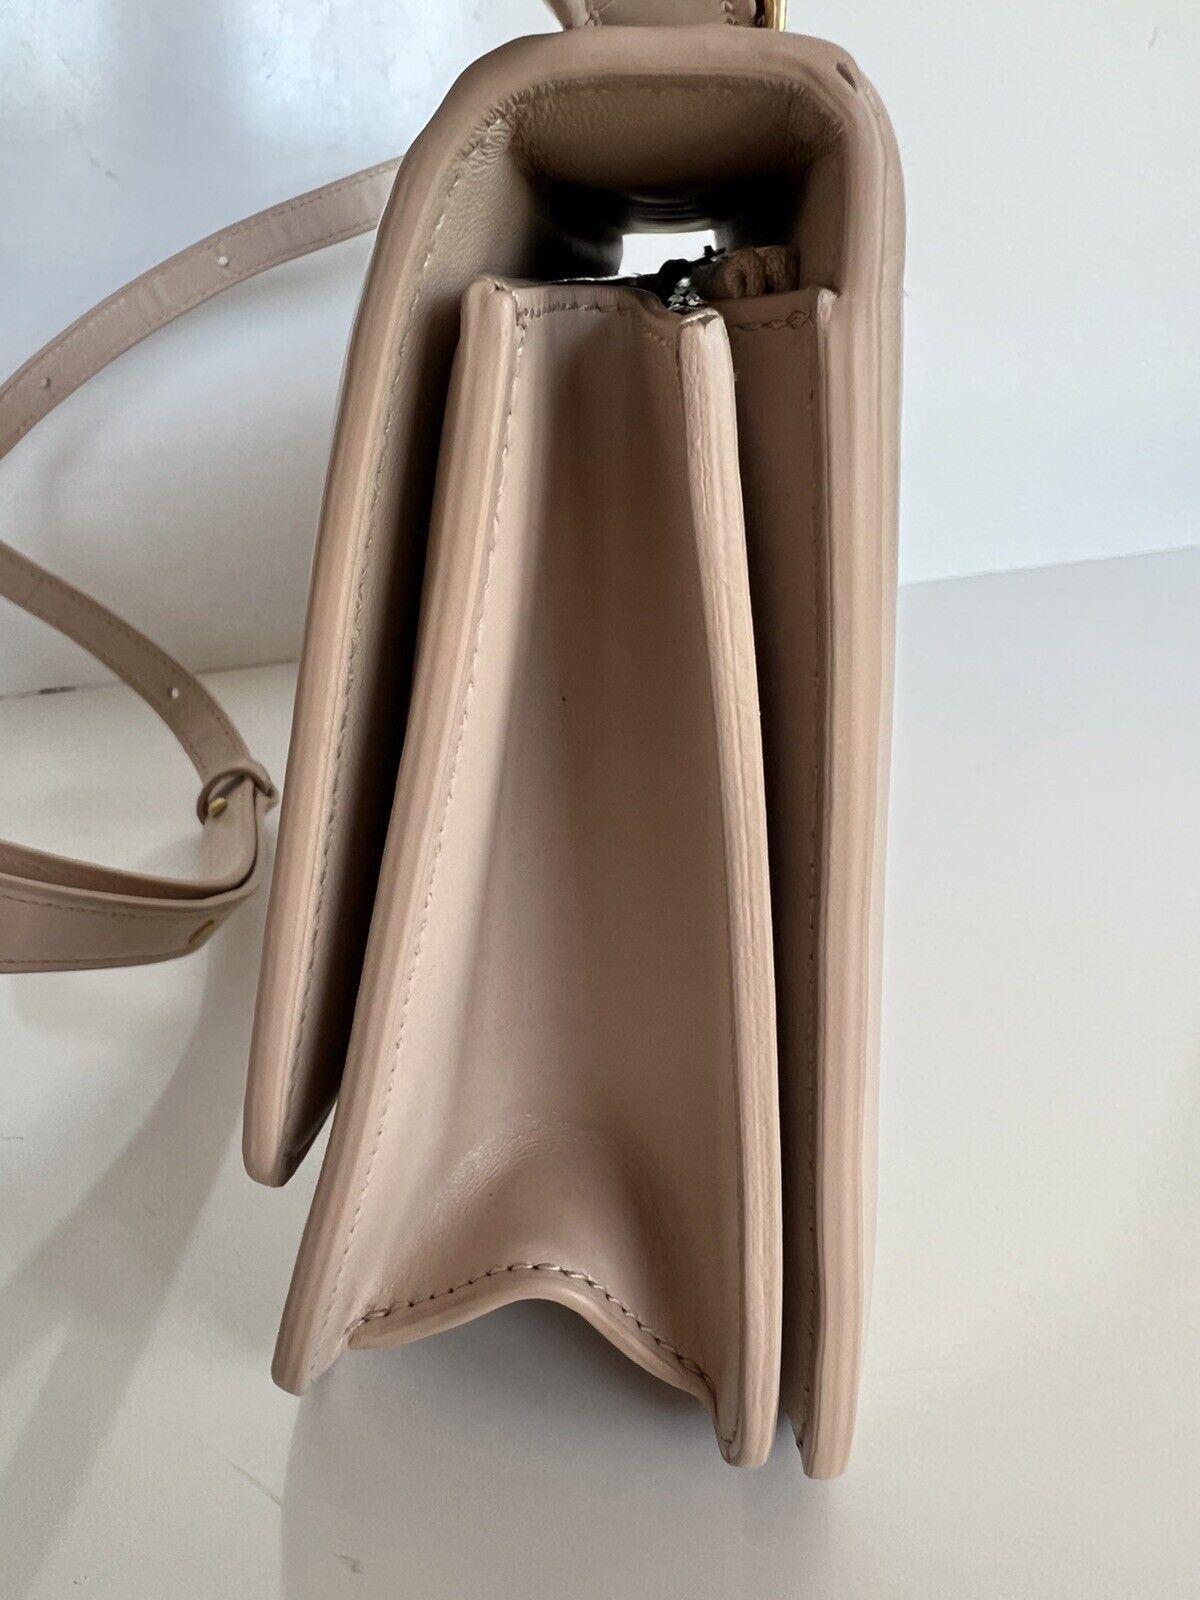 NWT $2540 Bottega Veneta Saddle Leather Medium Shoulder Bag 578009 Made in Italy